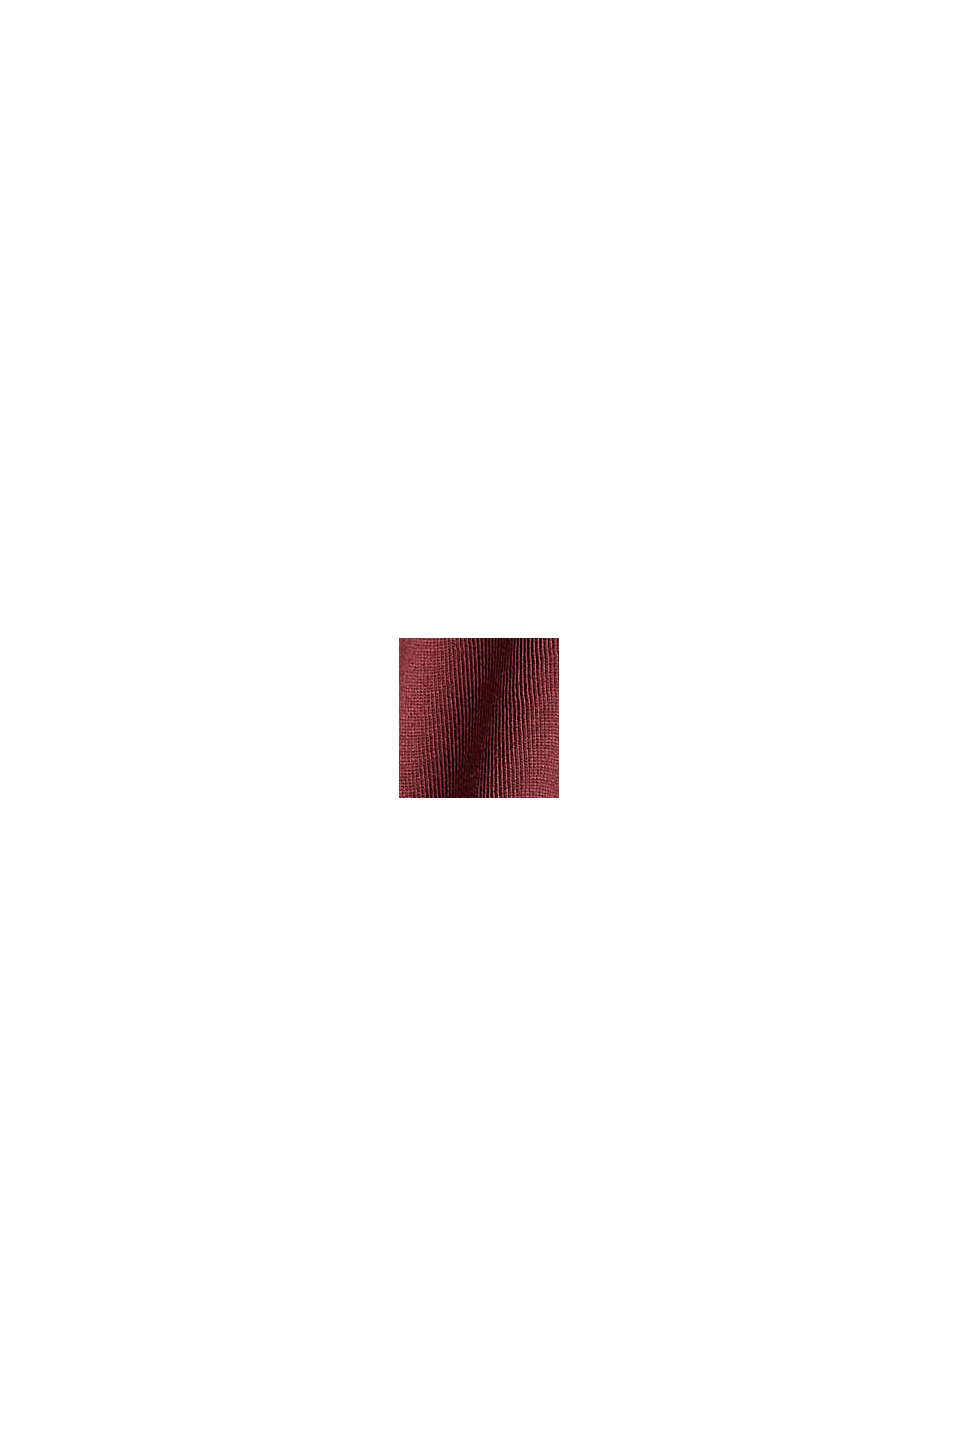 Jersey longsleeve in een laagjeslook, BORDEAUX RED, swatch